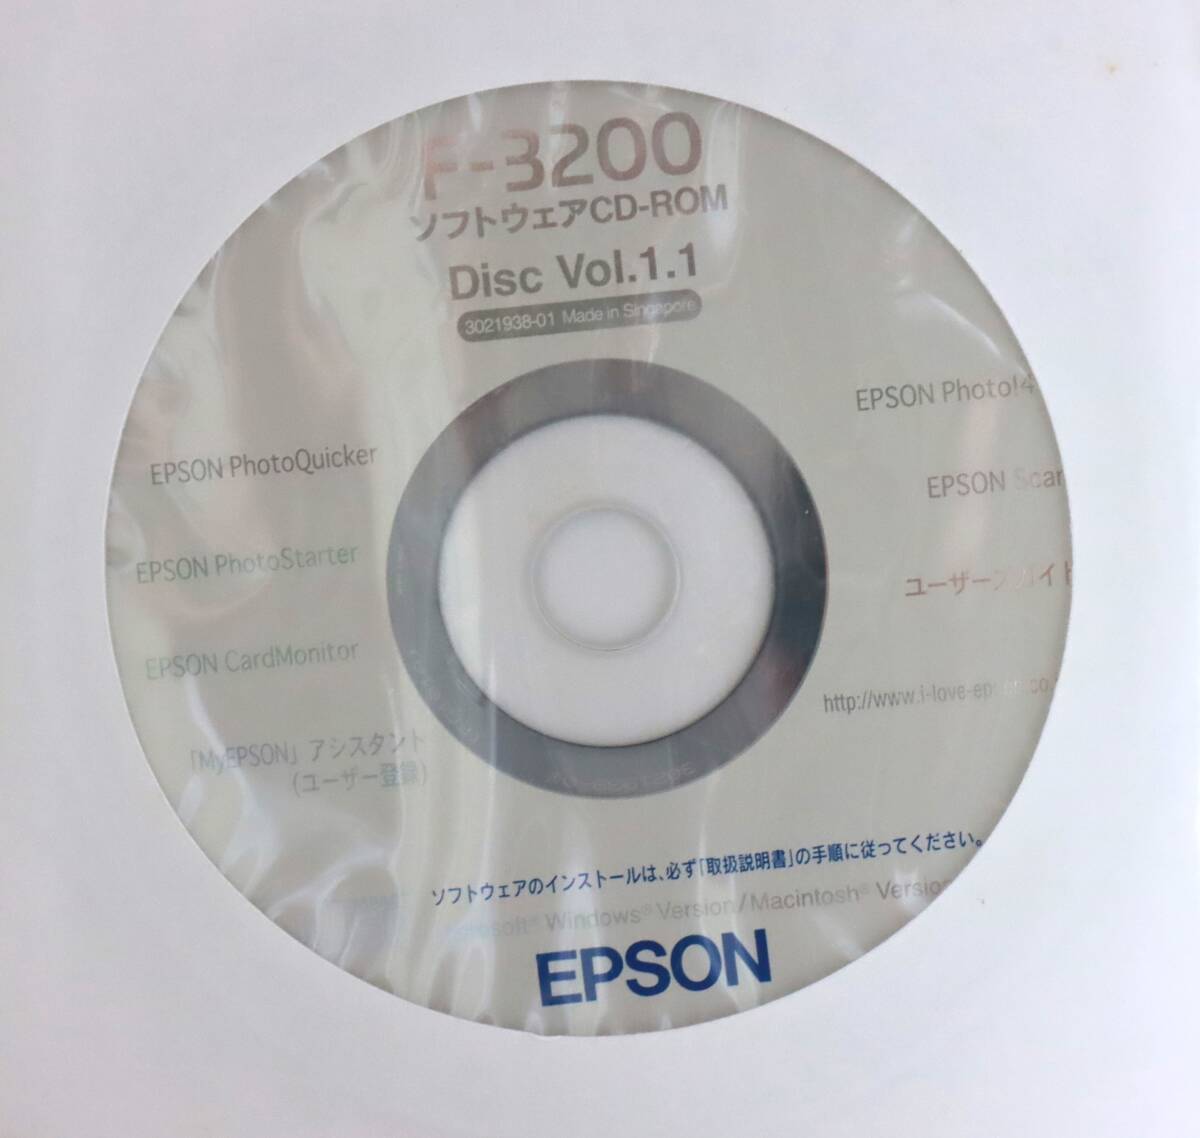 フィルムスキャナー エプソン EPSON F-3200 中古 1台 ジャンク品扱いの画像6